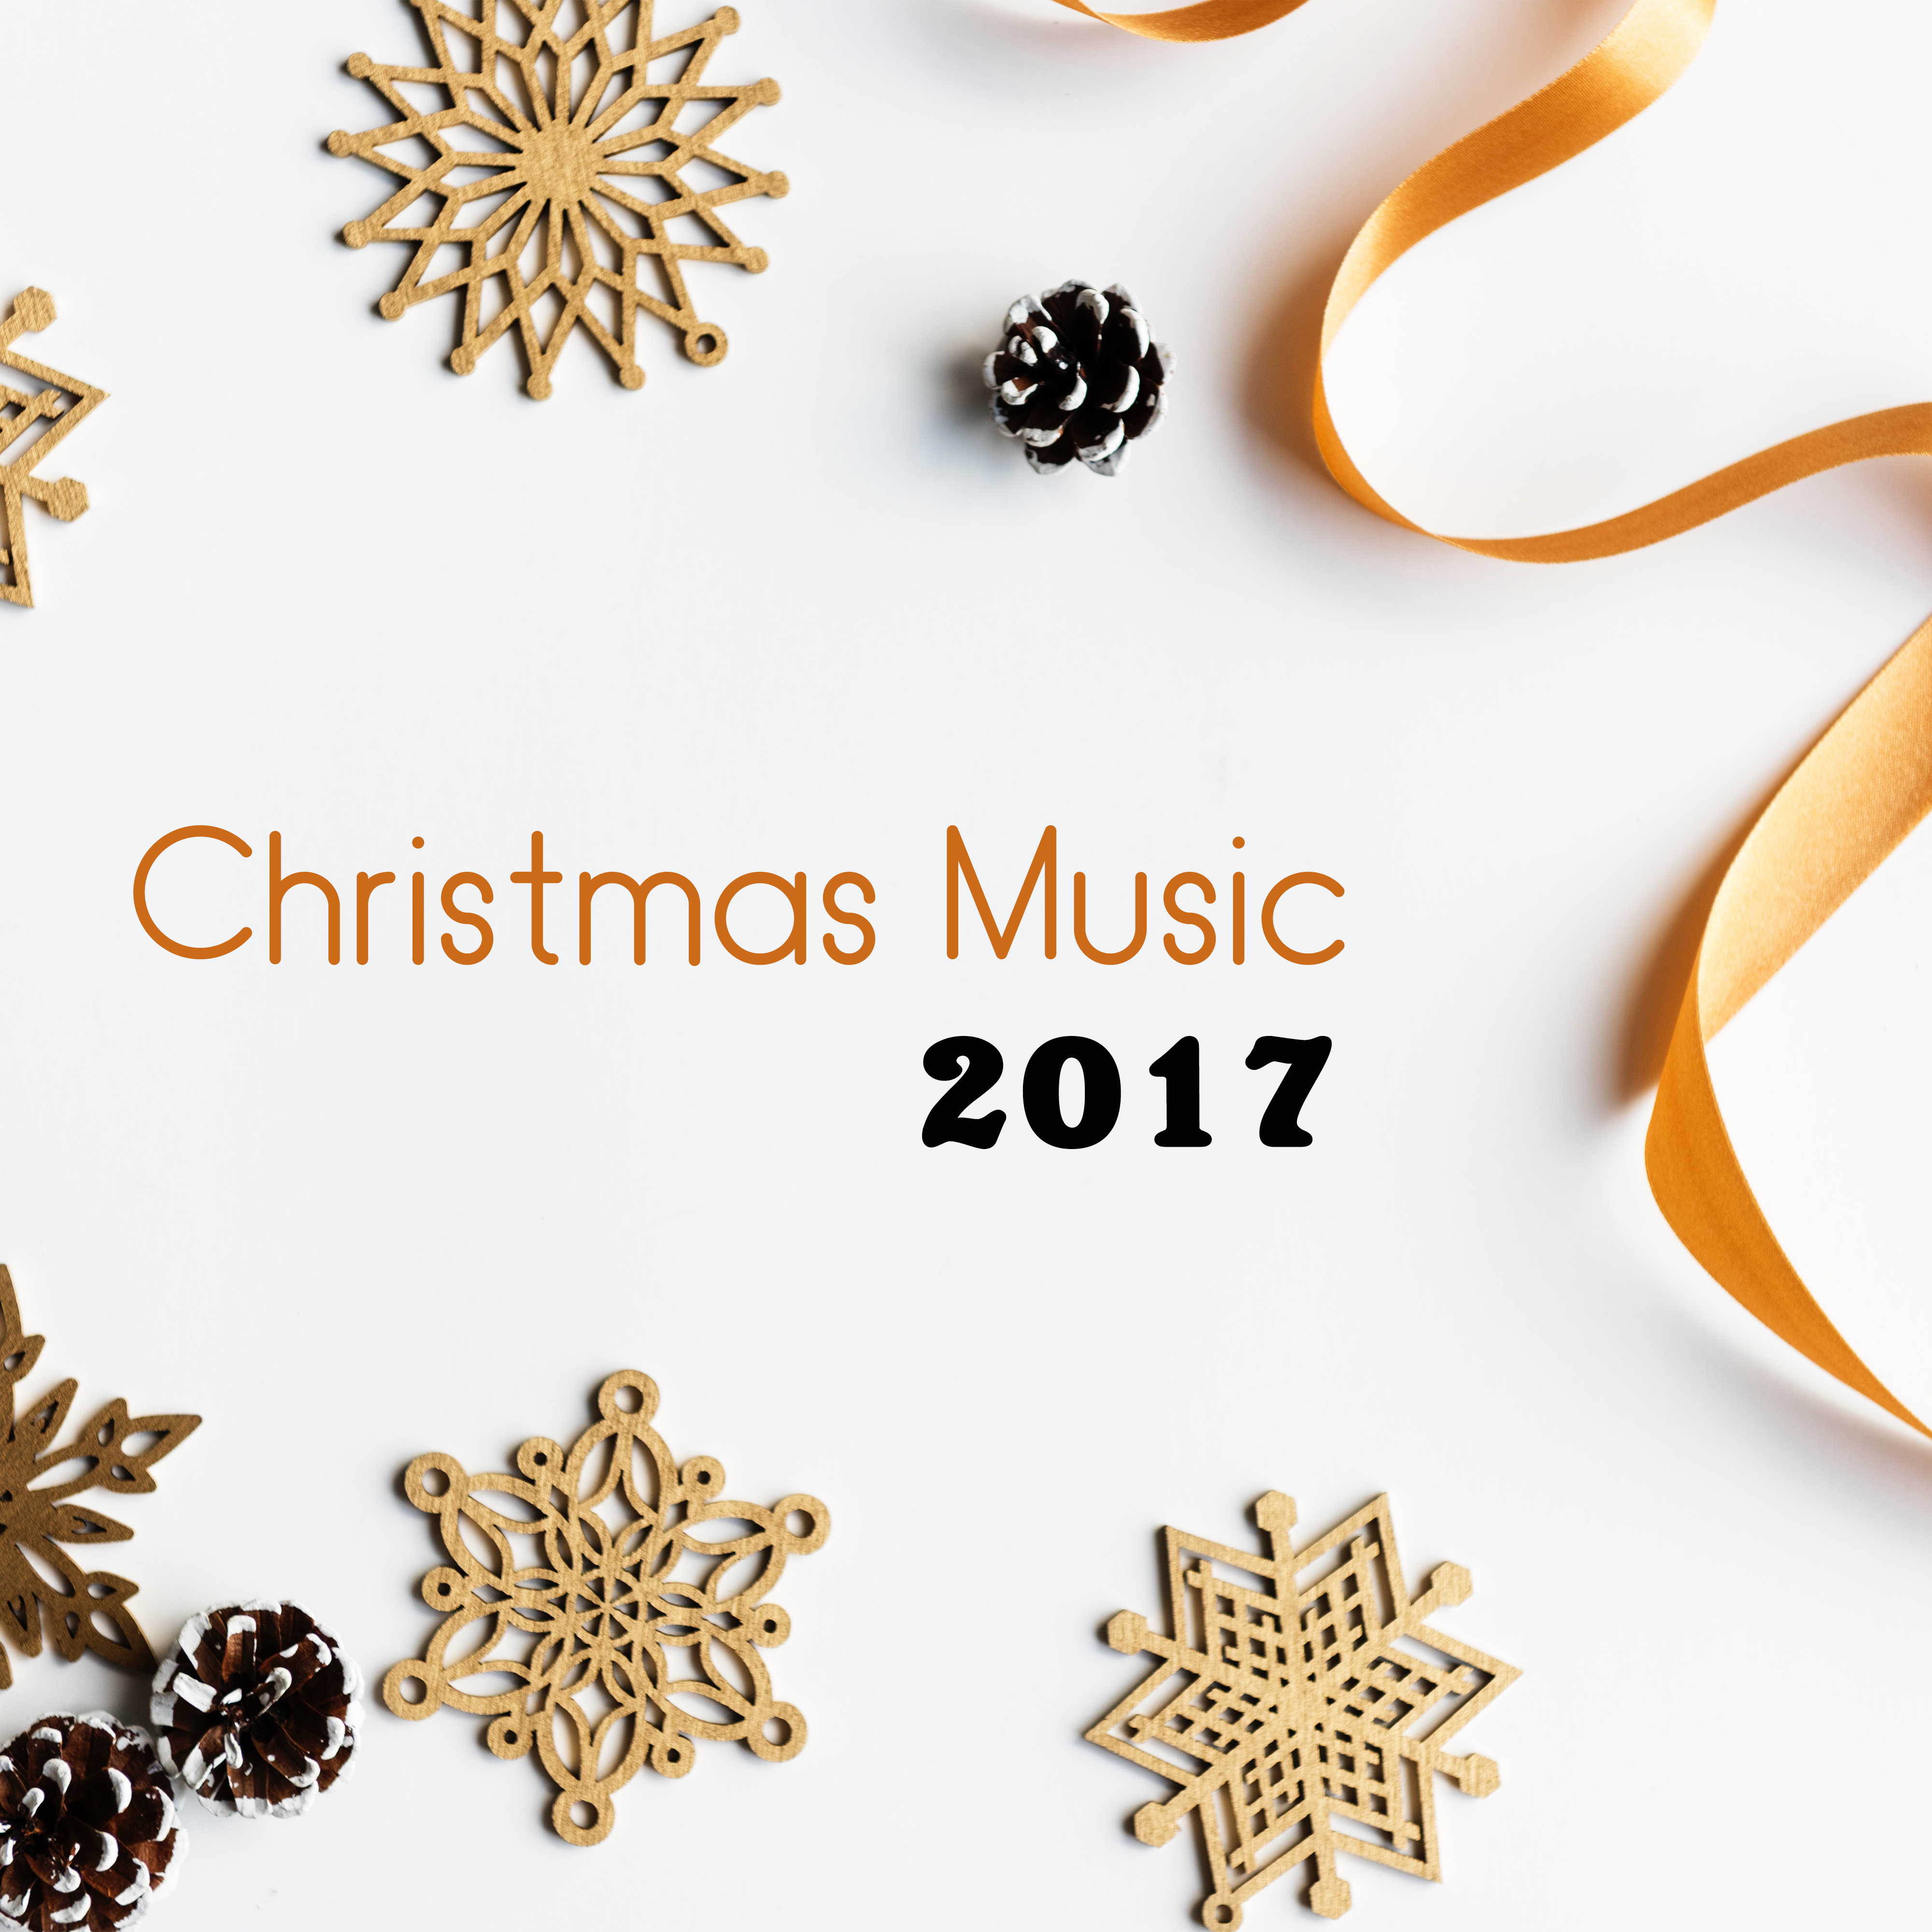 Christmas Music 2017